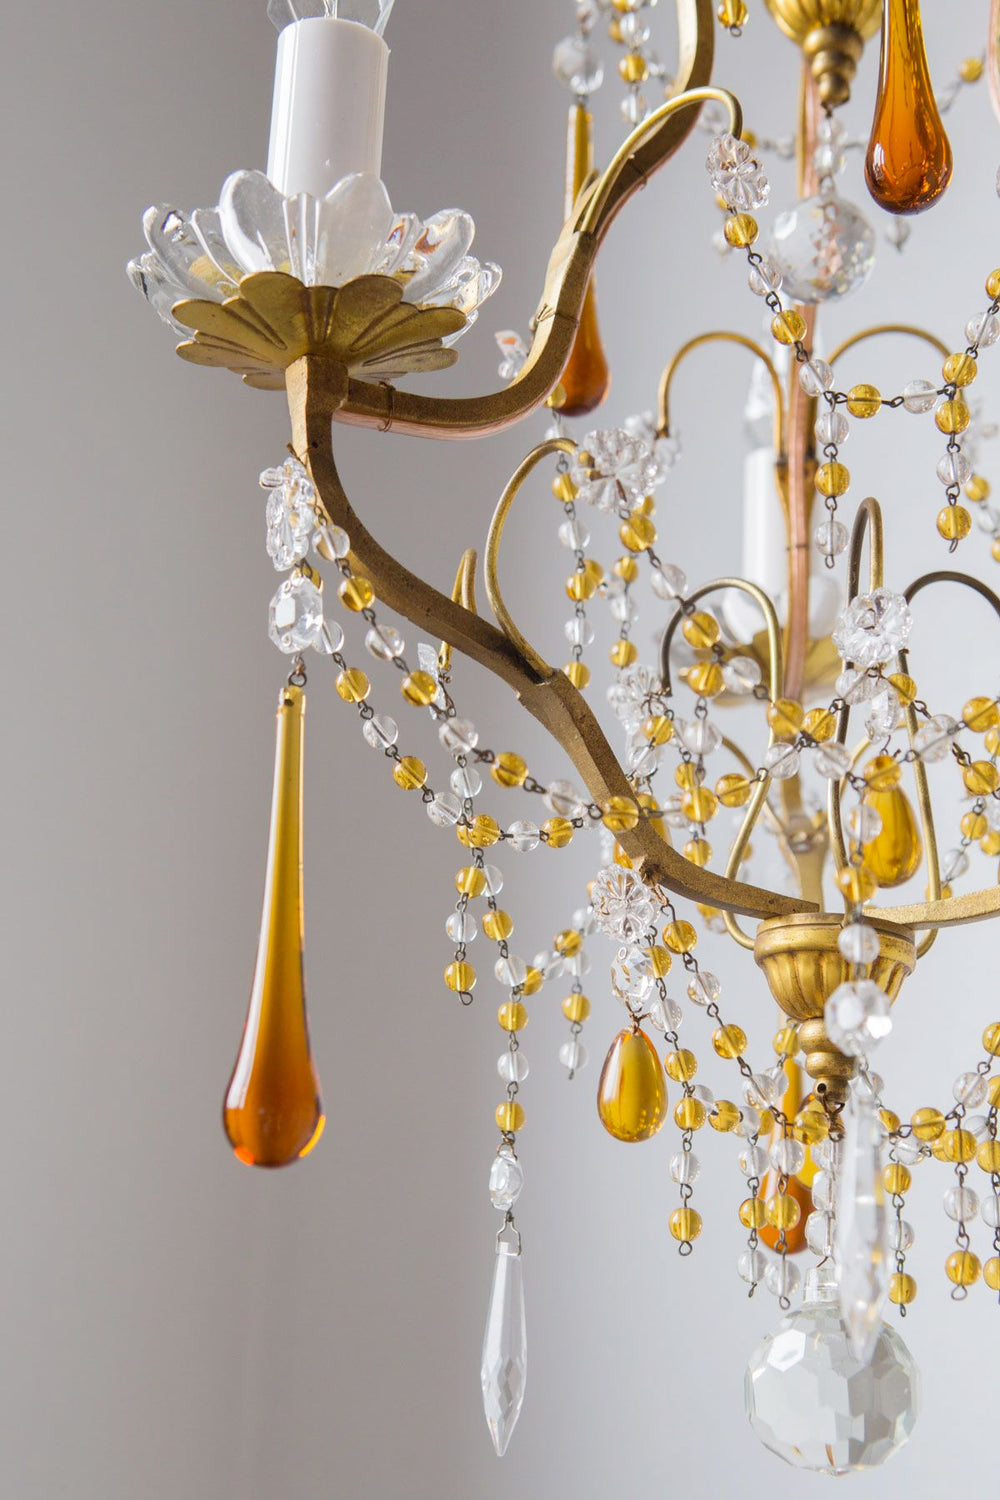 antigua lámpara de techo araña francesa con cristales antique vintage french chandelier lustre ancien ambar amber